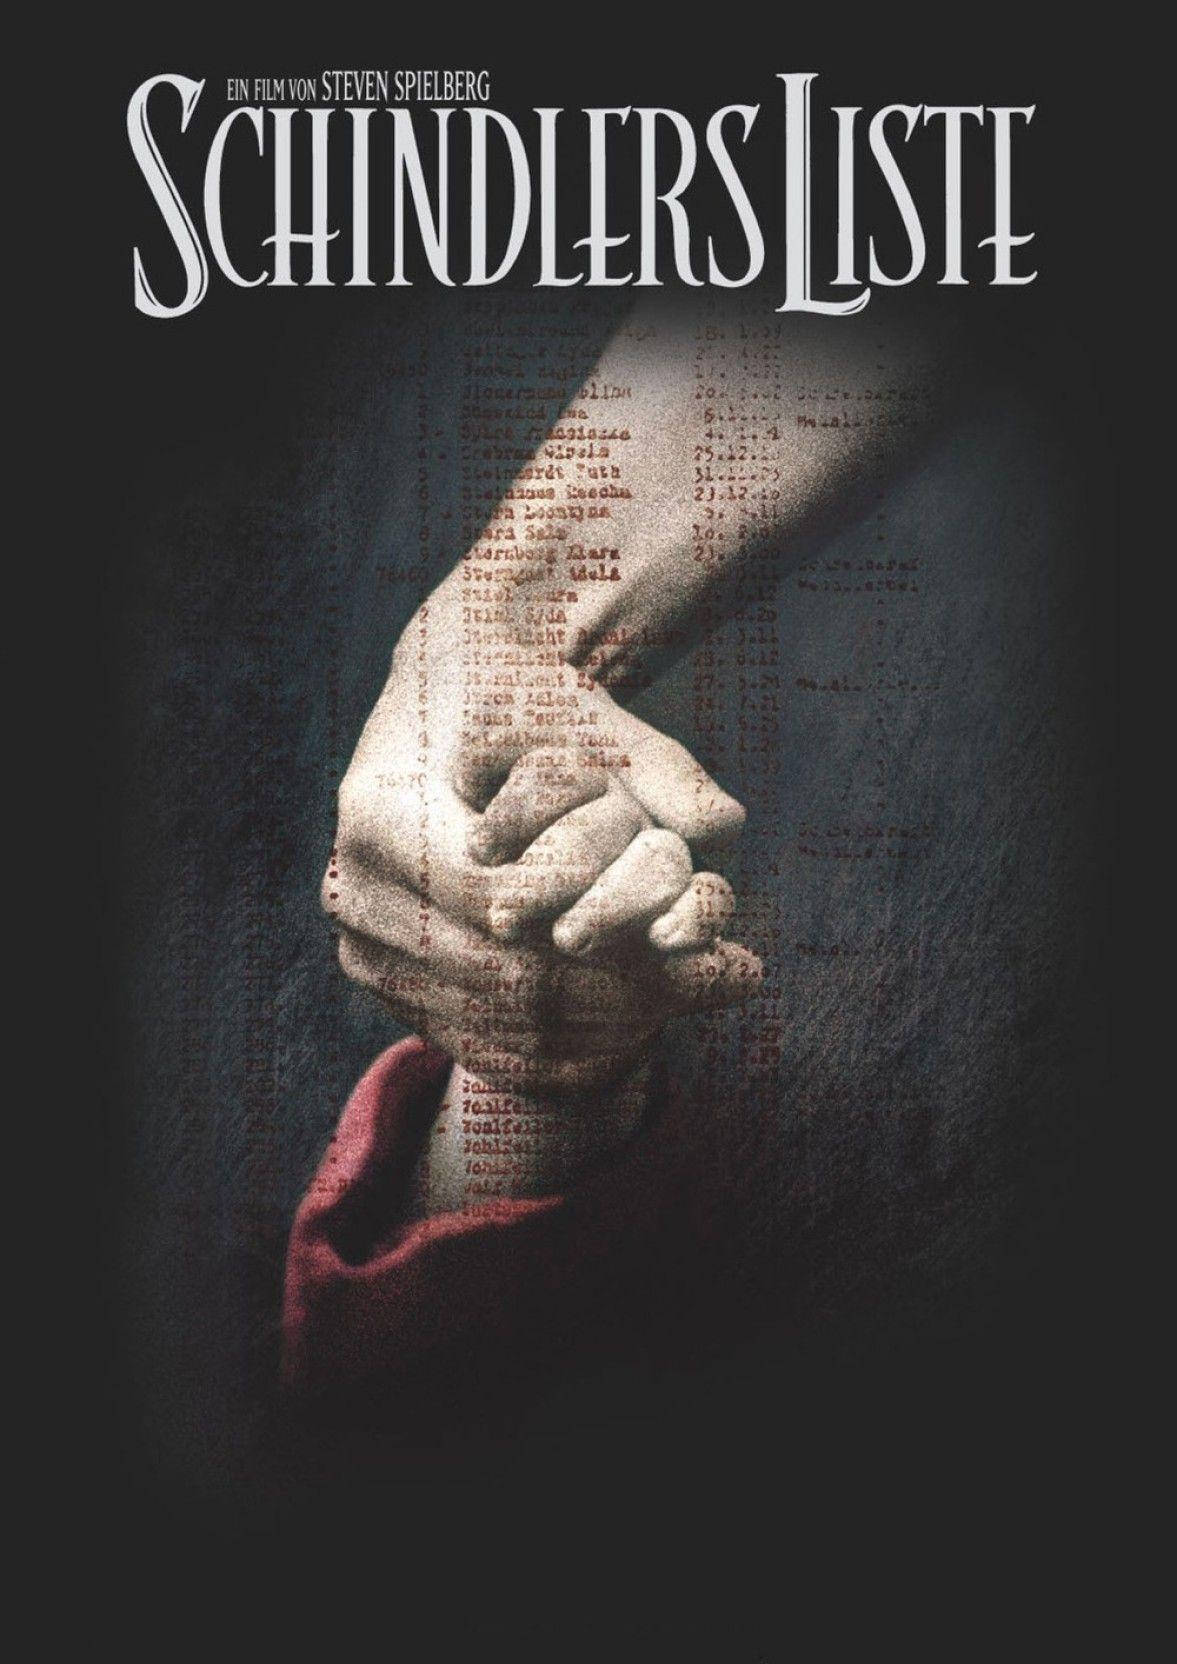 Schindler's List Steven Spielberg 1993 Movie Poster Wallpaper